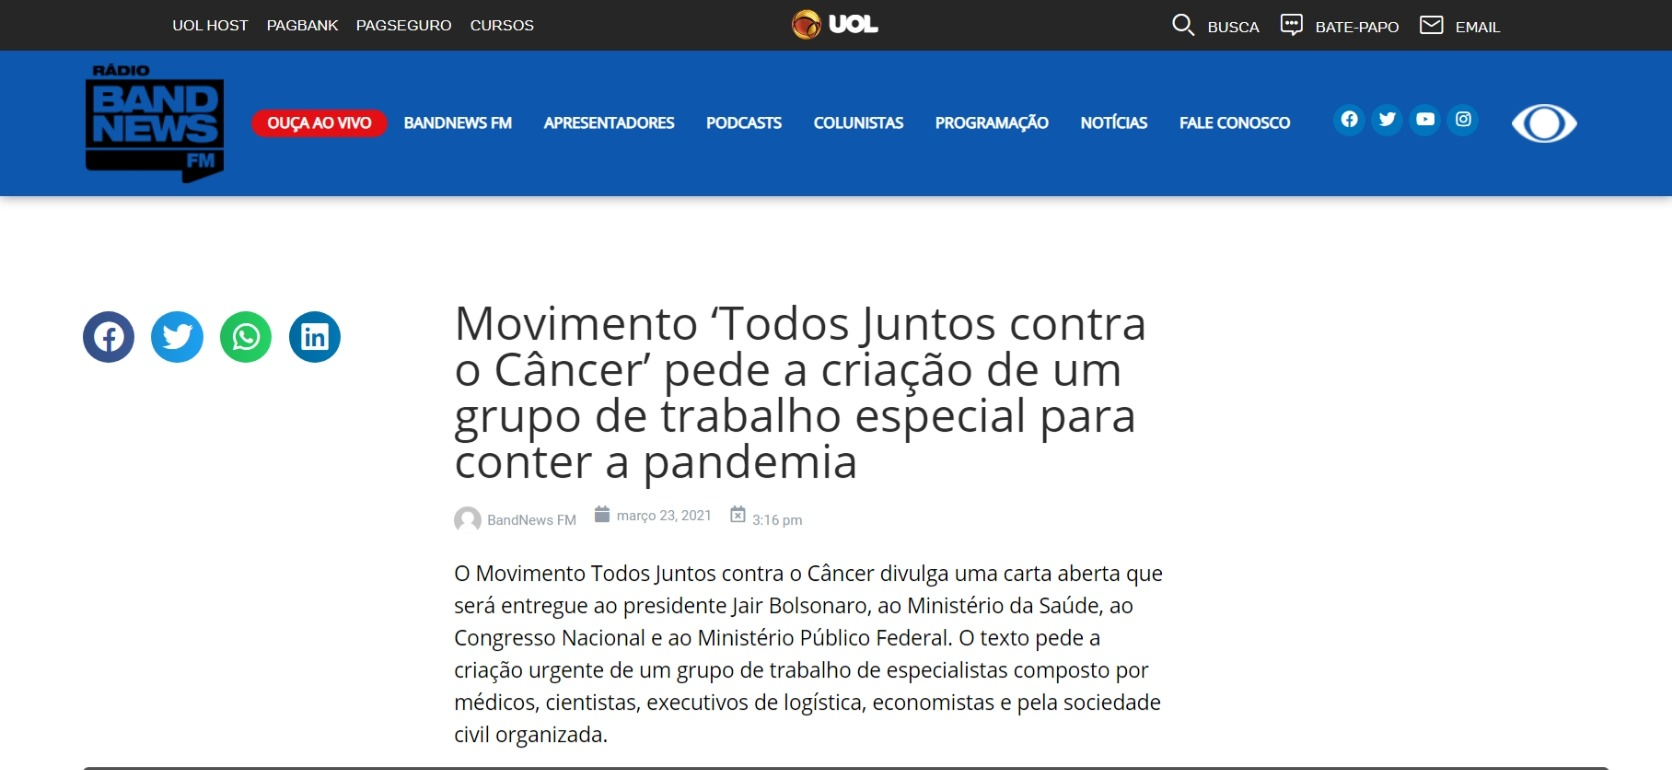 Movimento ‘Todos Juntos contra o Câncer’ pede a criação de um grupo de trabalho especial para conter a pandemia